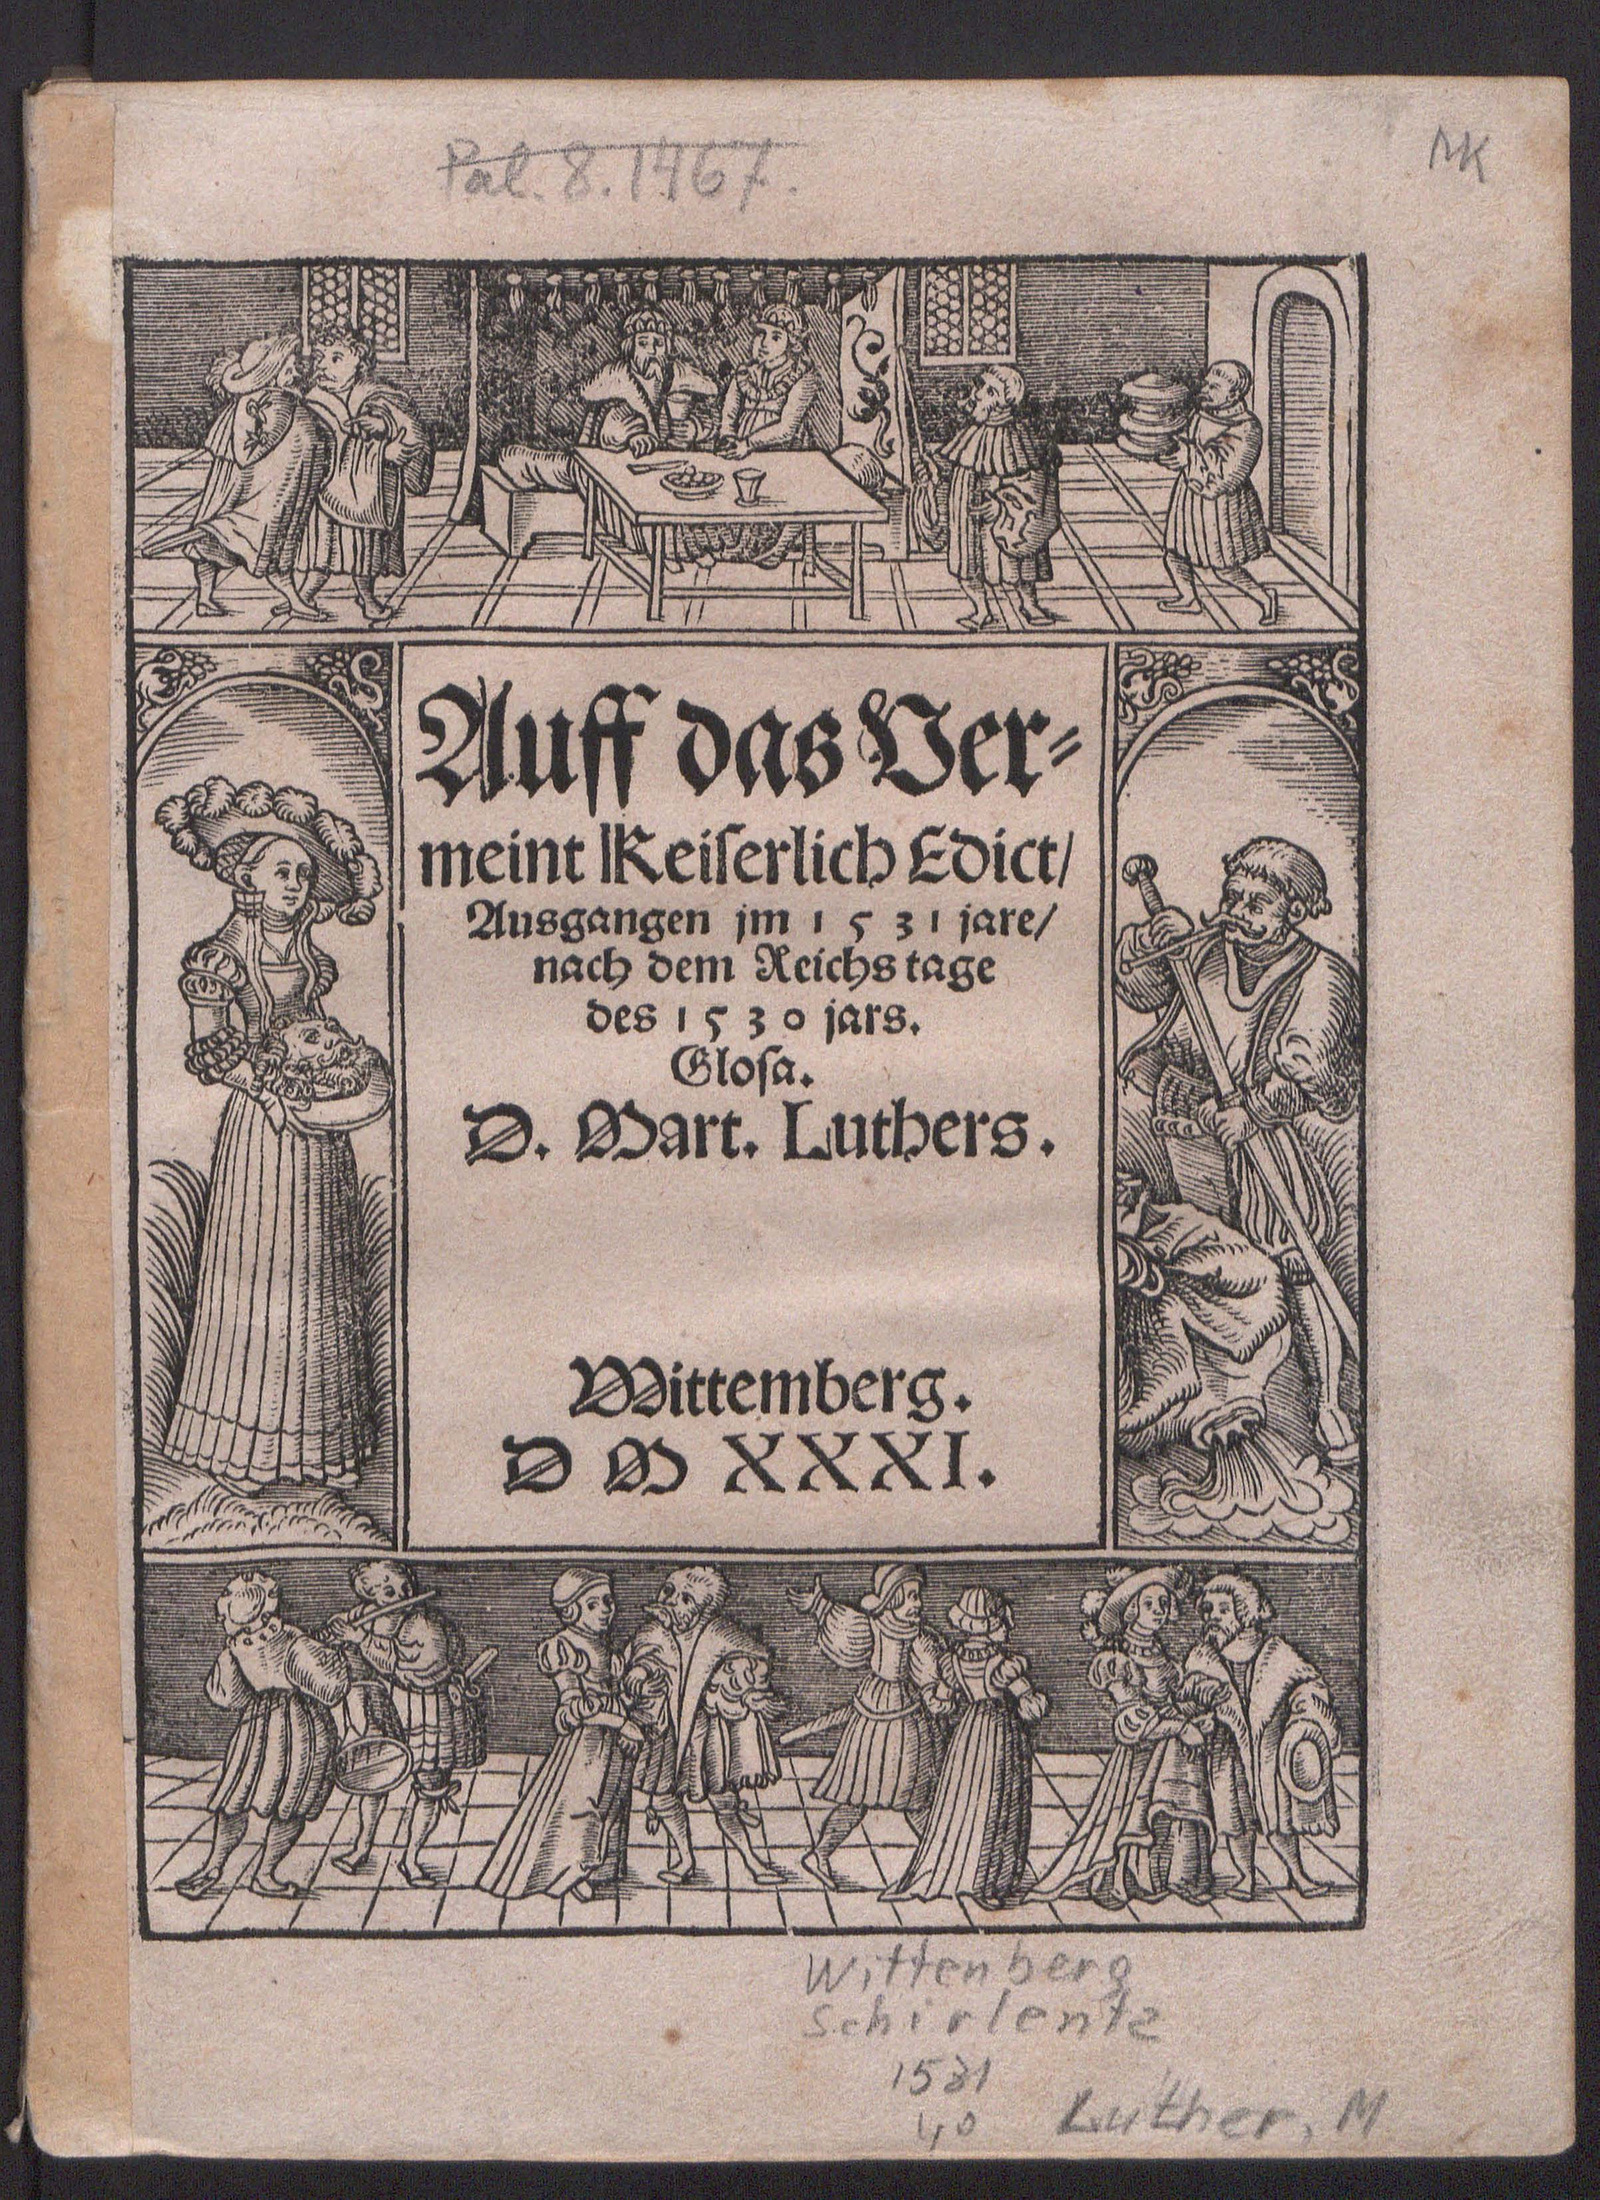 Изображение Auff das Vermeint Keiserlich Edict, ausgangen jm 1531 jare, nach dem Reichs tage des 1530 jars. Glosa